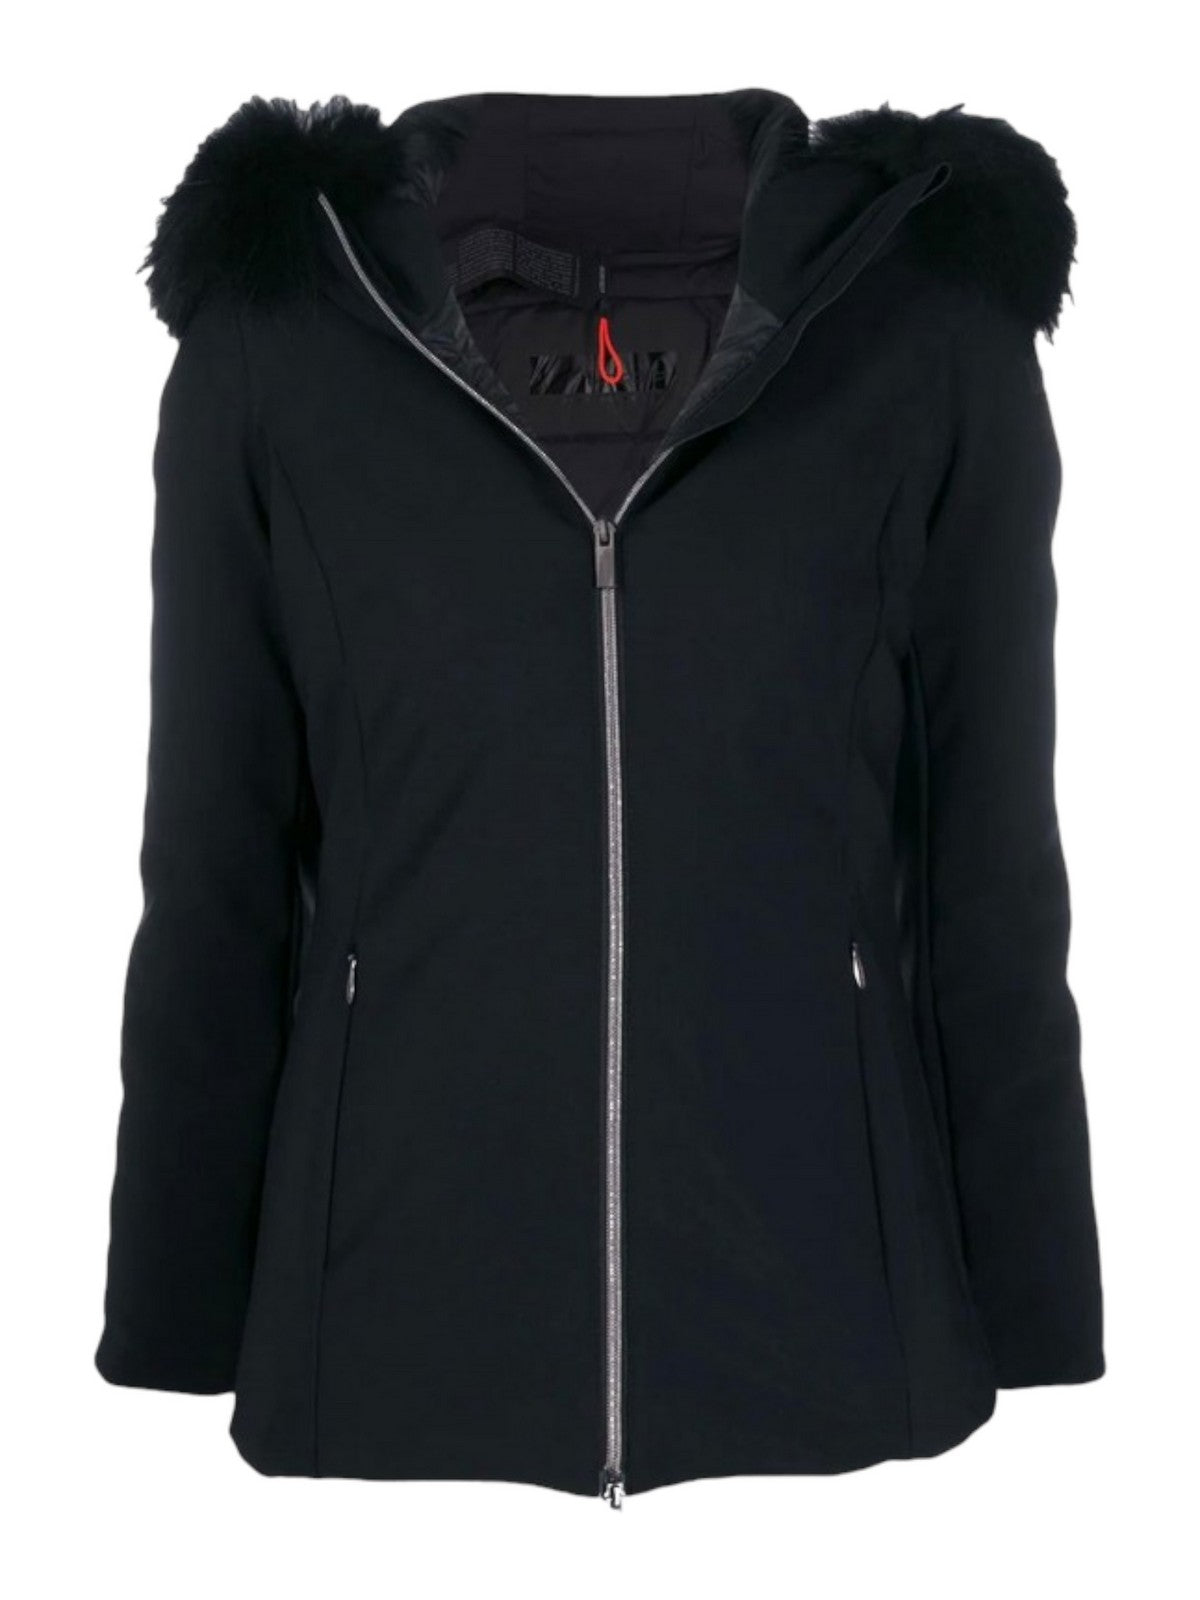 RRD Women's Jacket W23501FT 10 Black